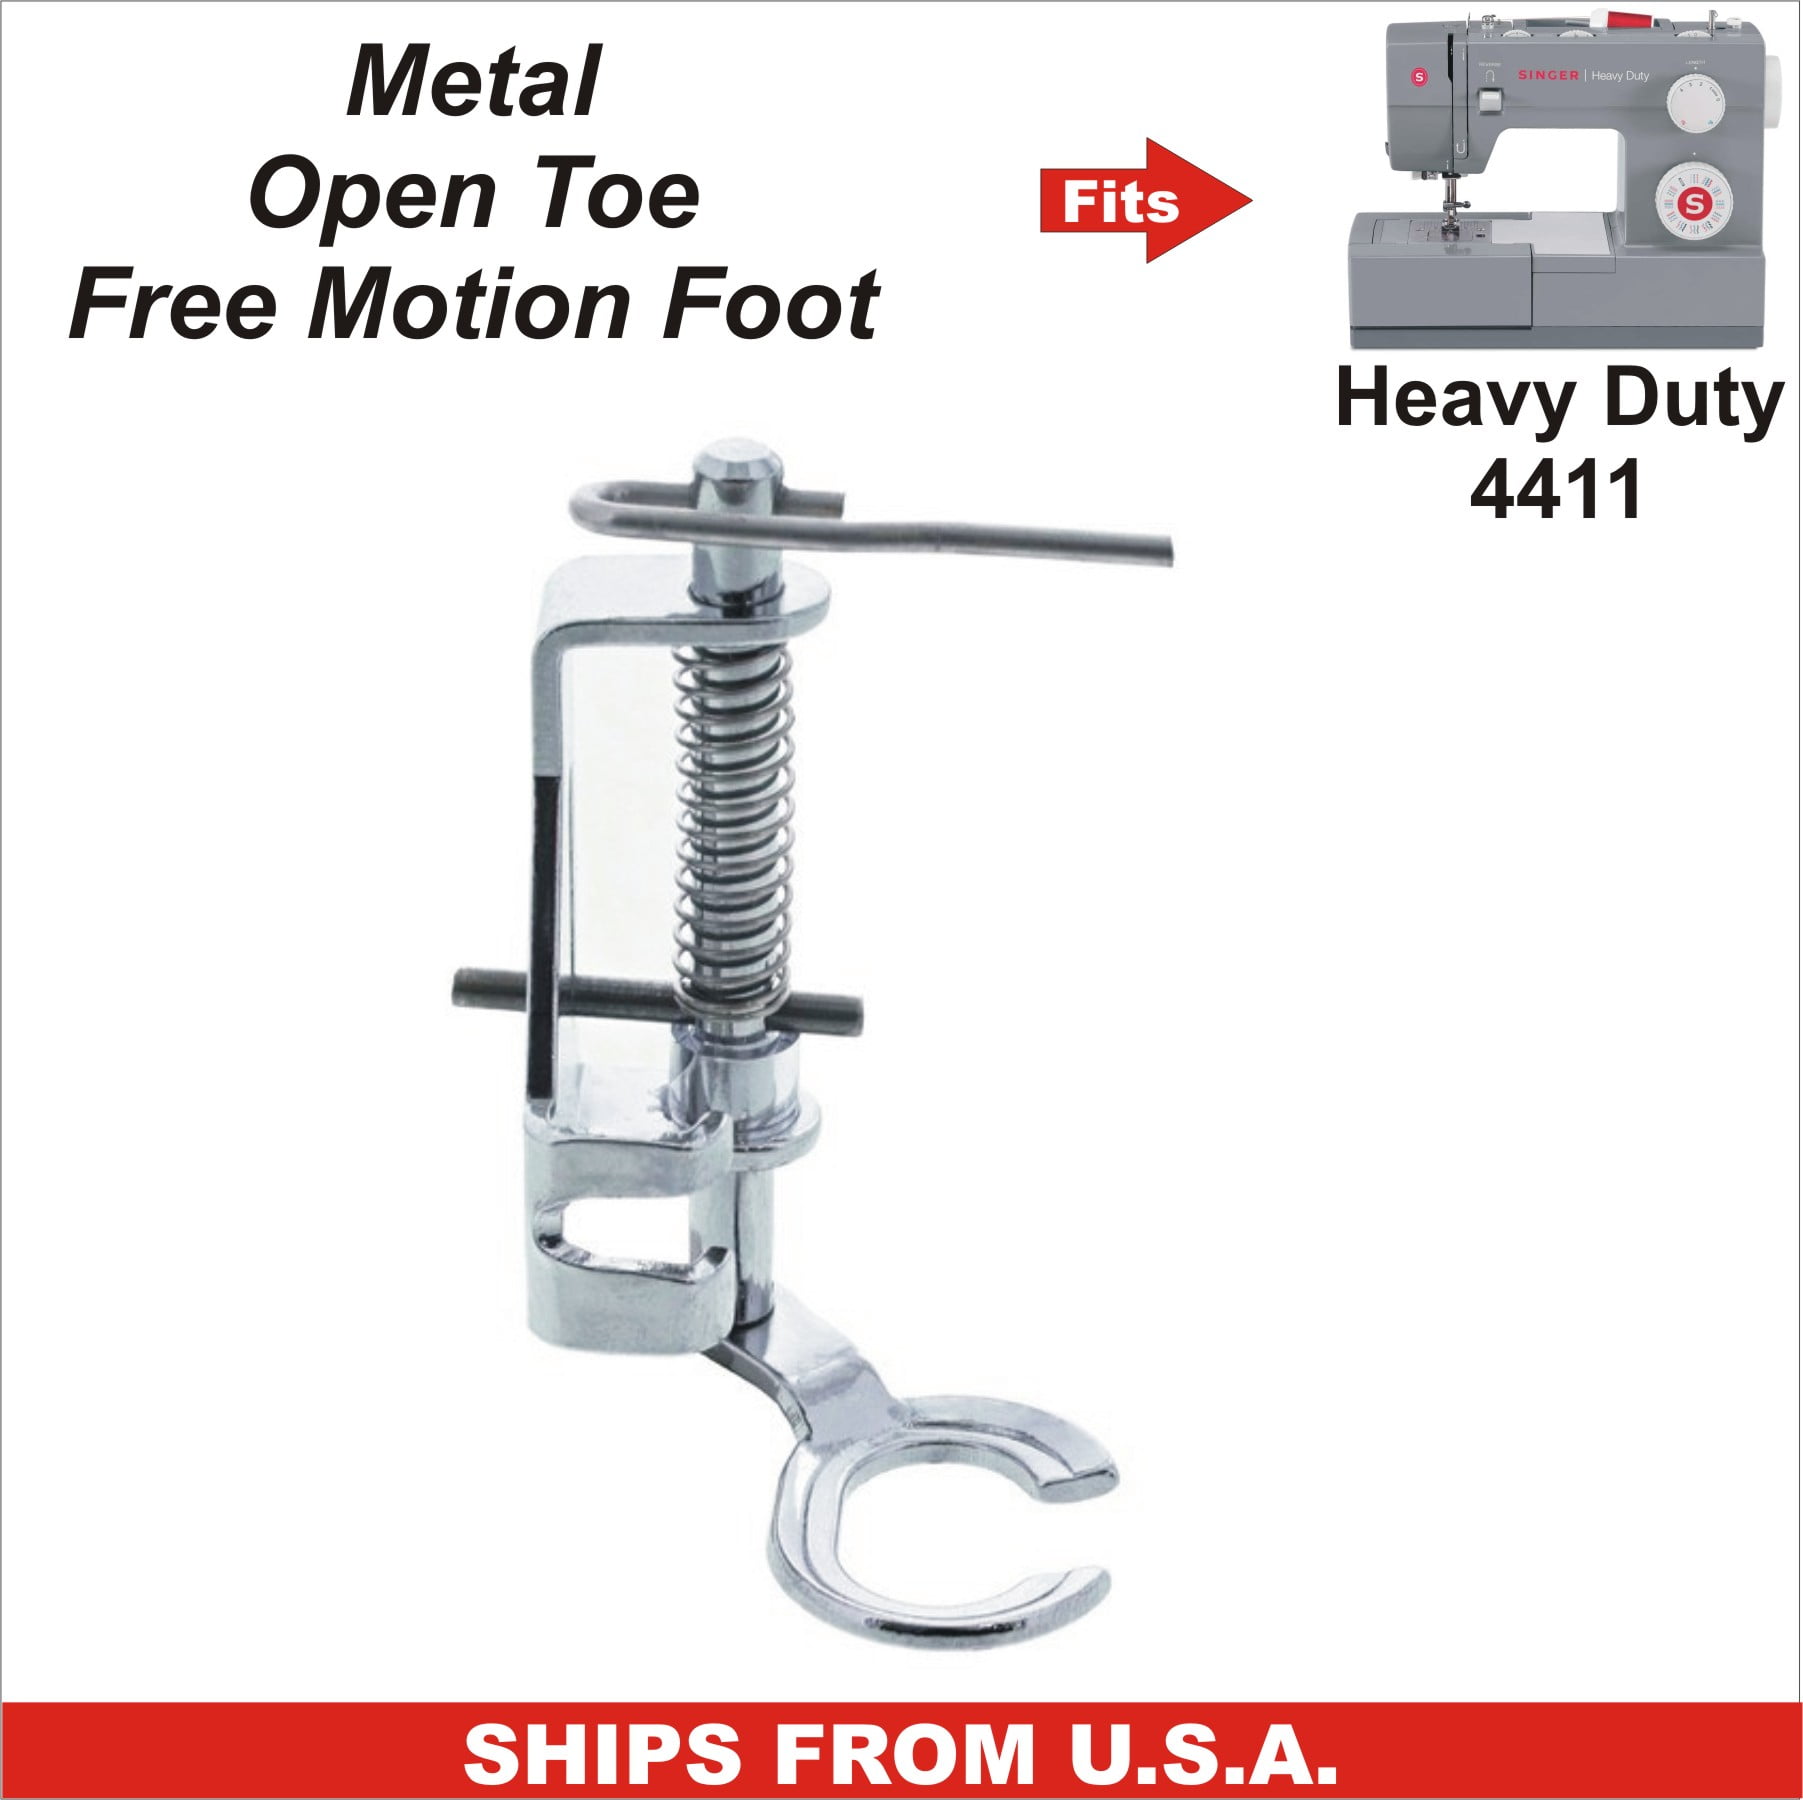 Free Motion Open Toe Foot, metal